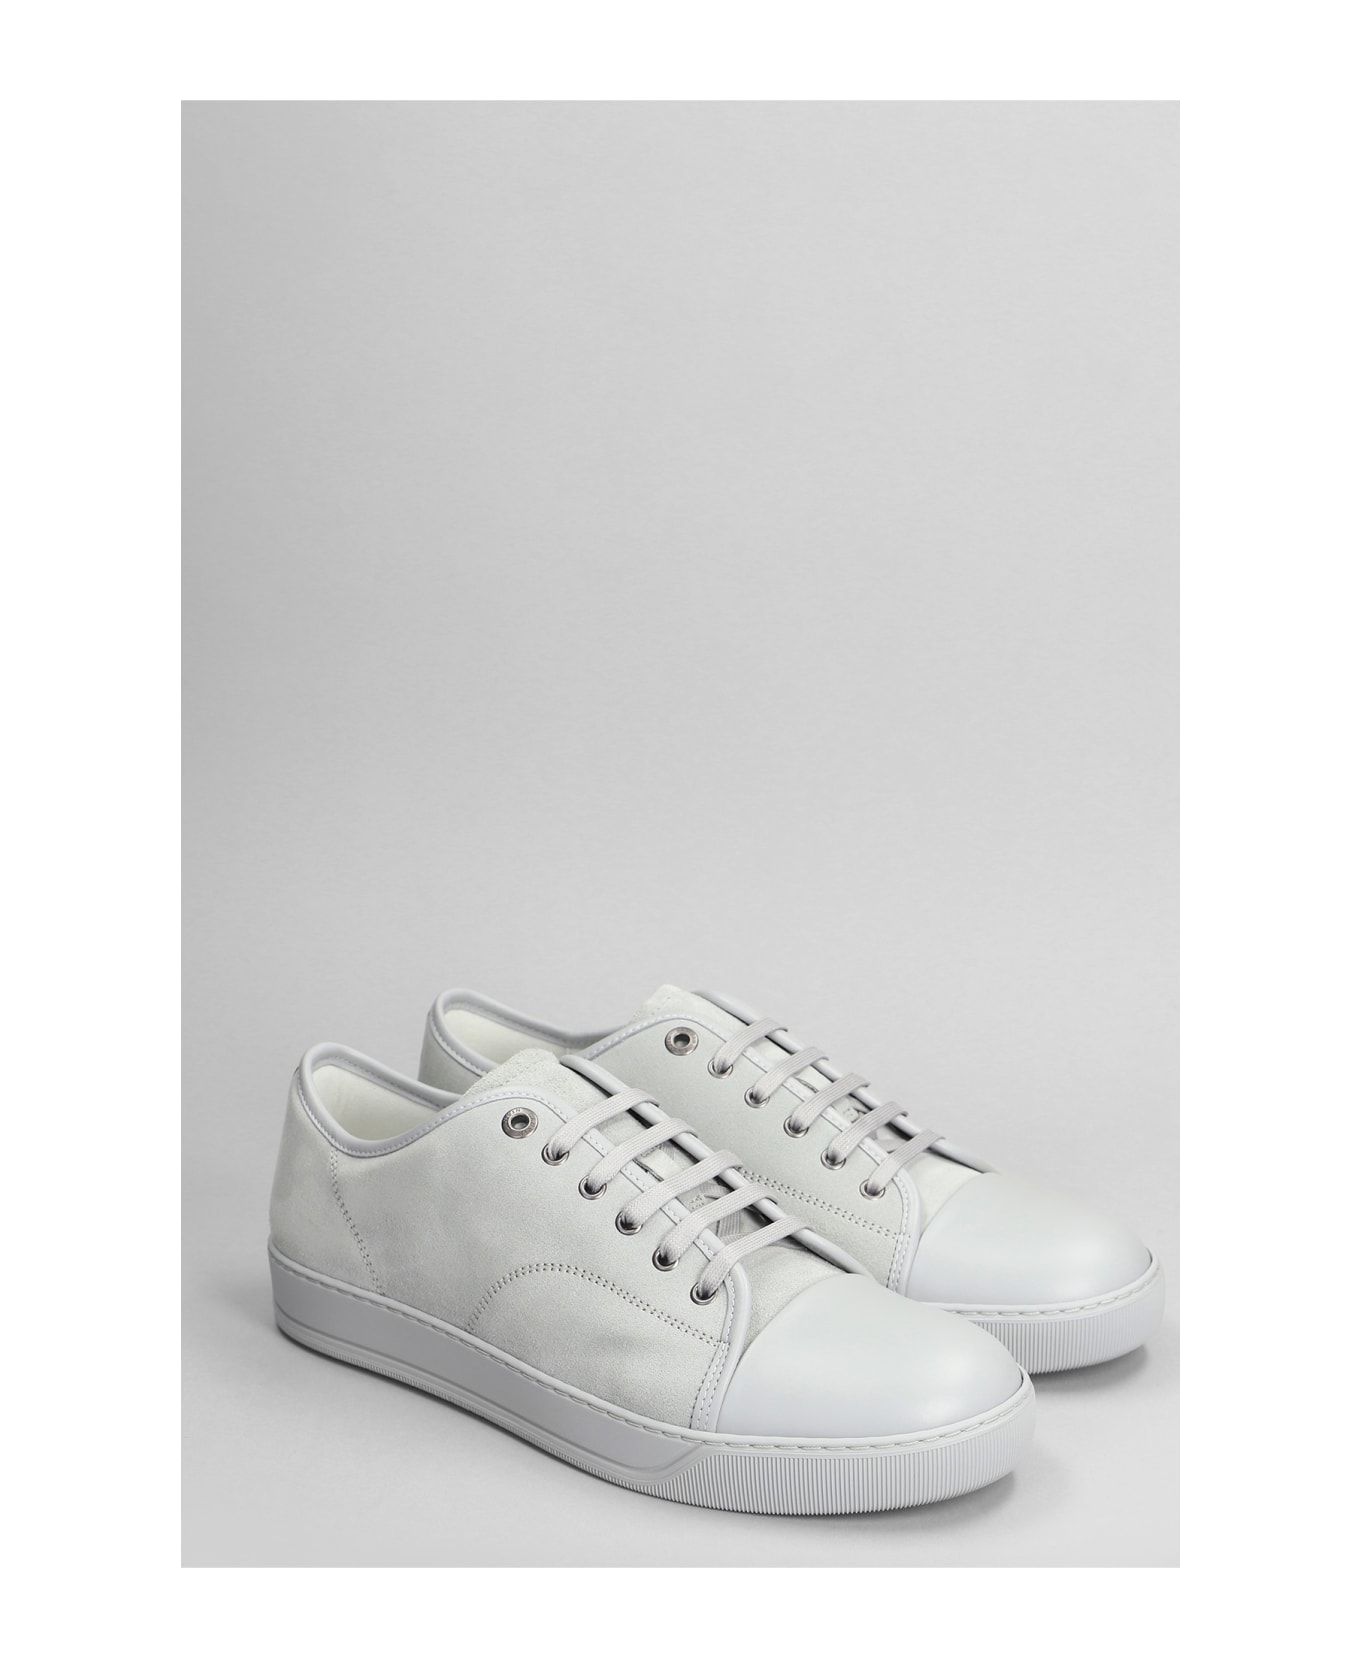 Lanvin Dbb1 Sneakers In Grey Suede - grey